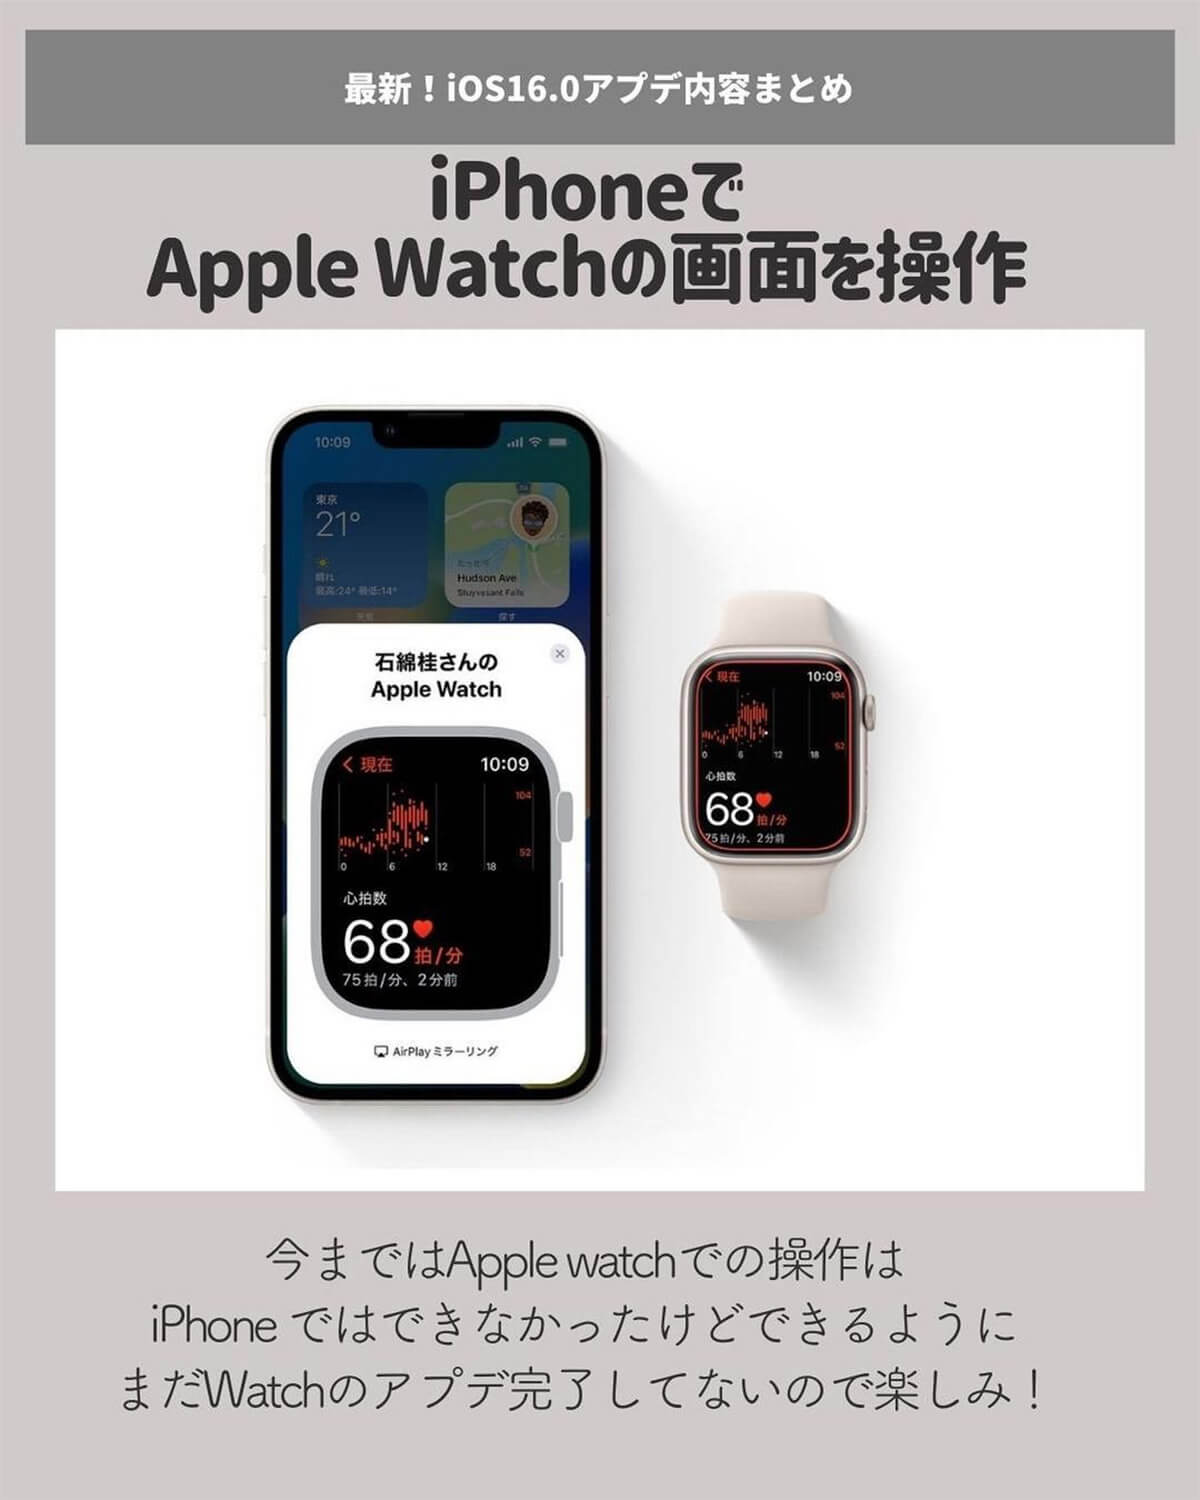 iPhoneでApple Watchの画面を操作できる